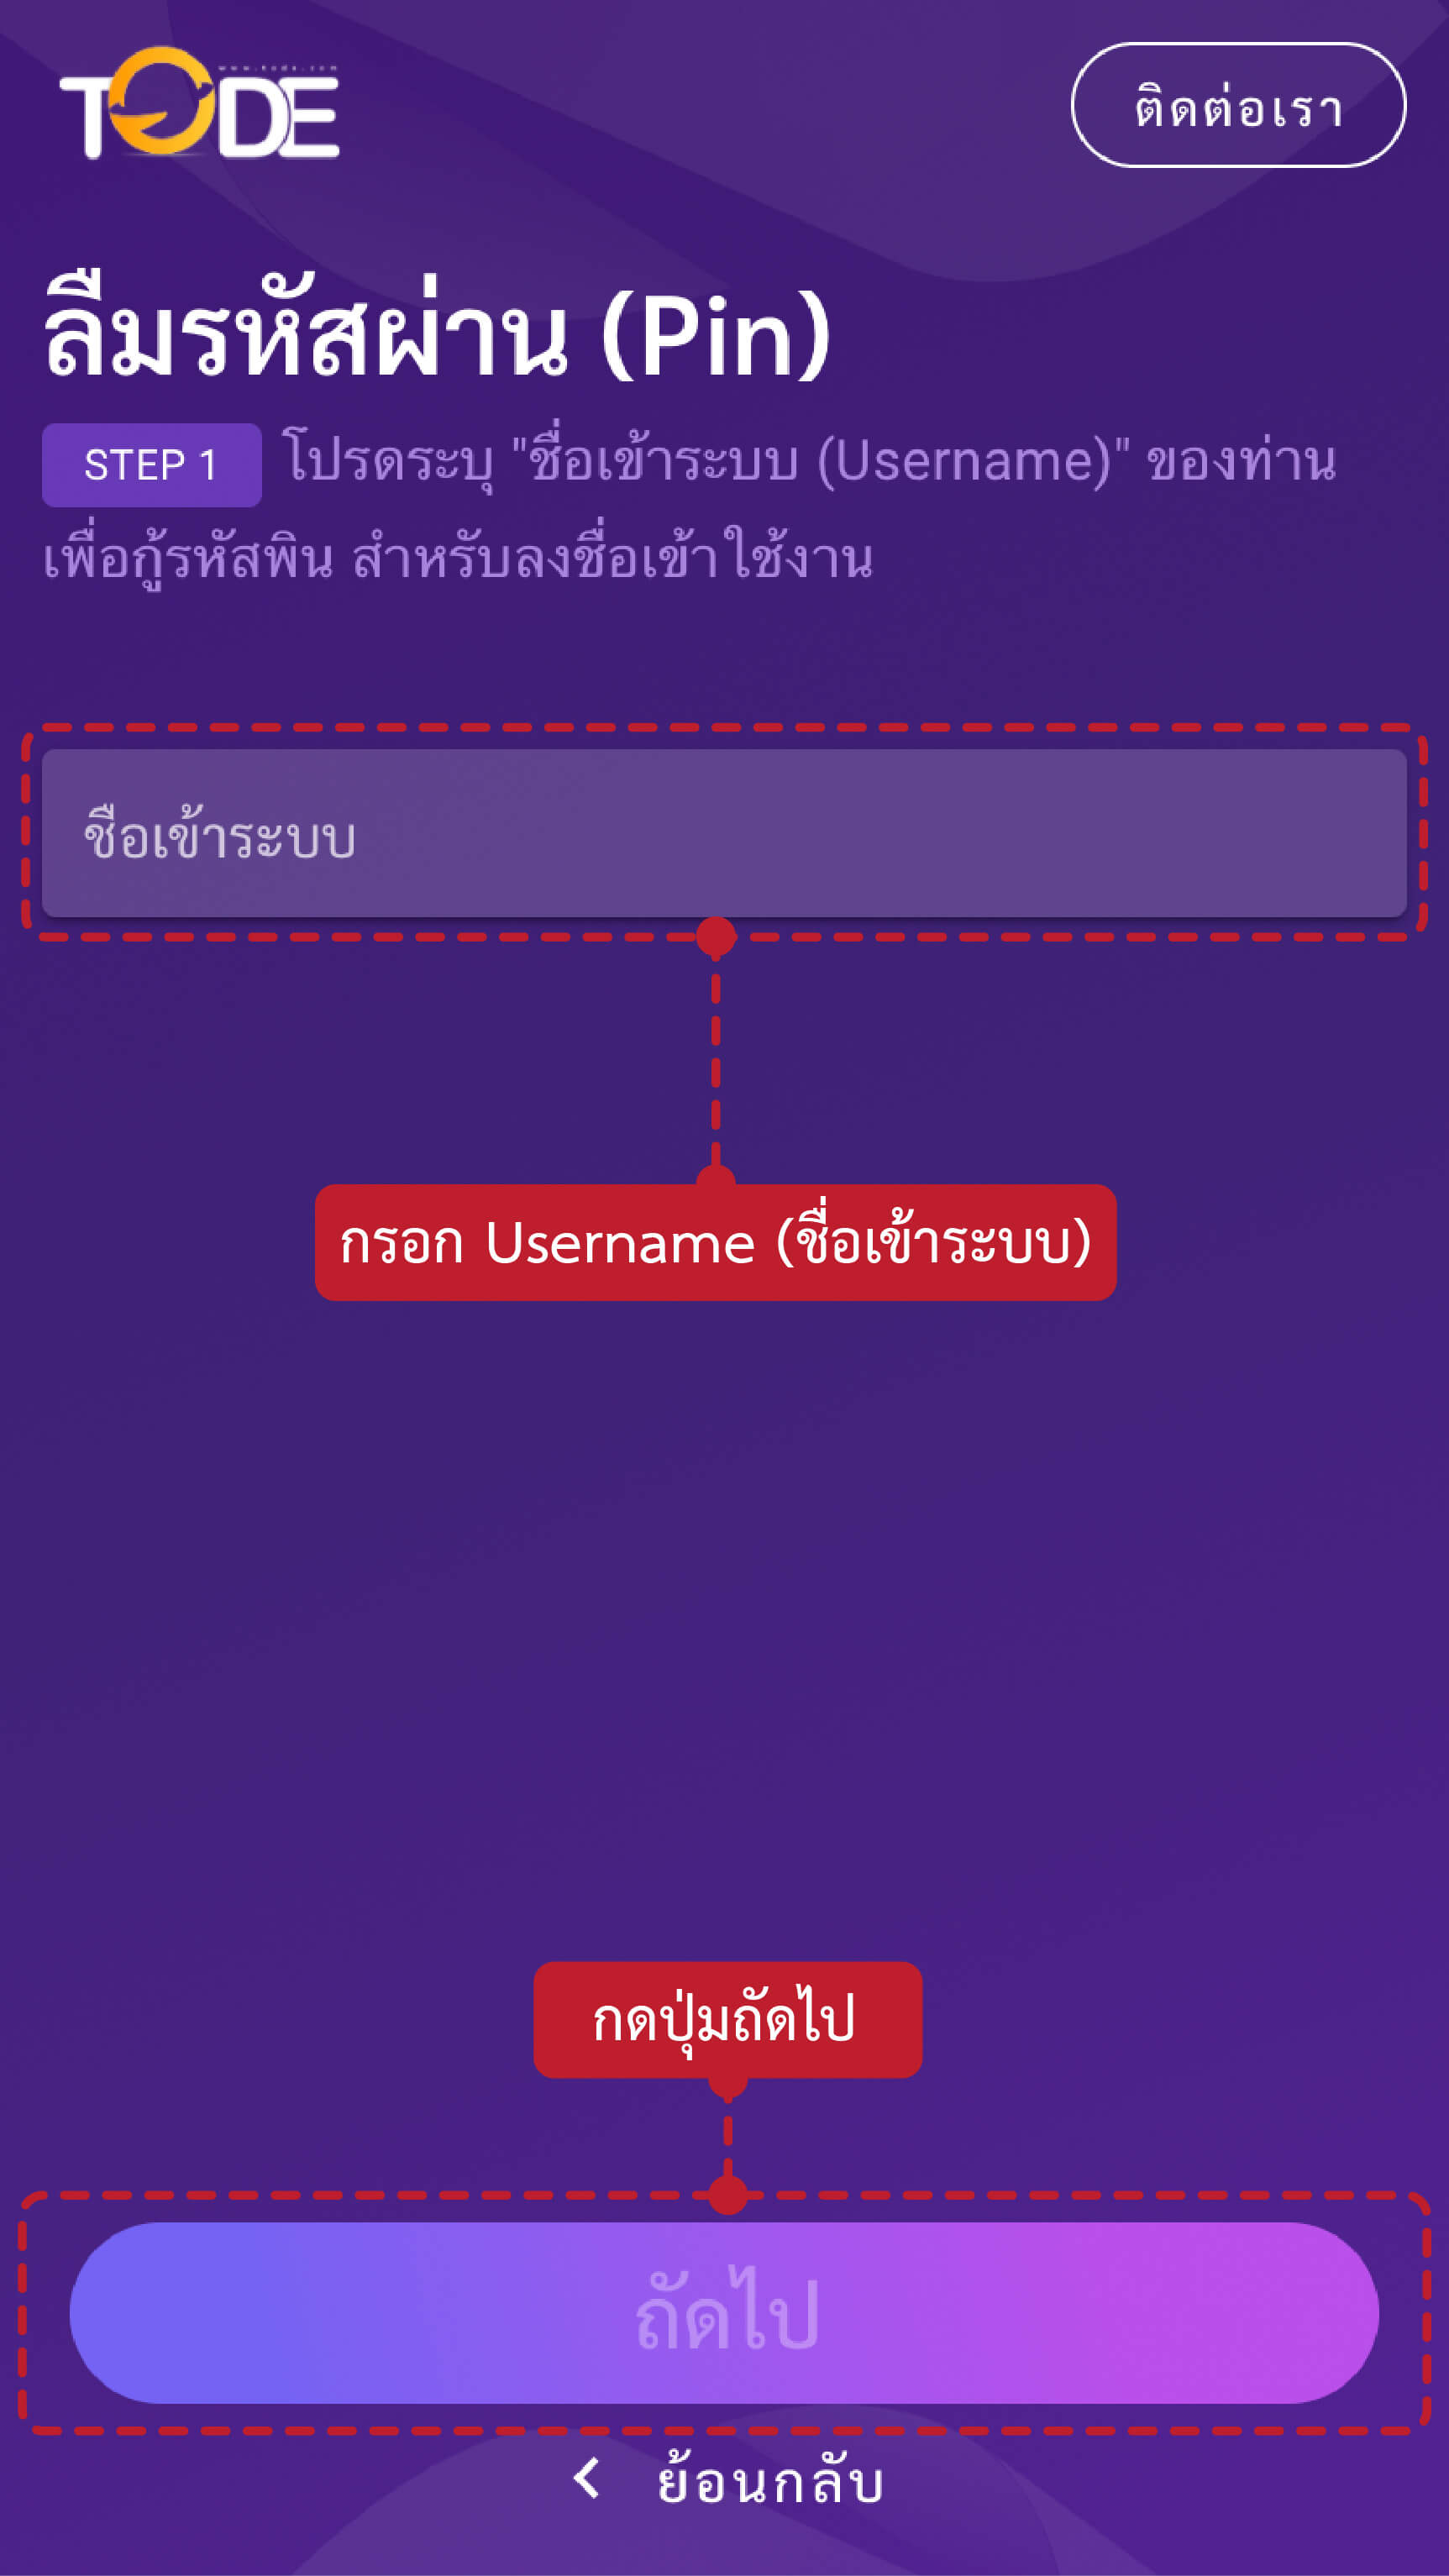 ขั้นตอนวิธีรีรหัสผ่านหากลืมรหัสผ่าน เว็บโต๊ดเว็บแทงหวยอันดับ1ของไทยสูงสุดบาทละ1200